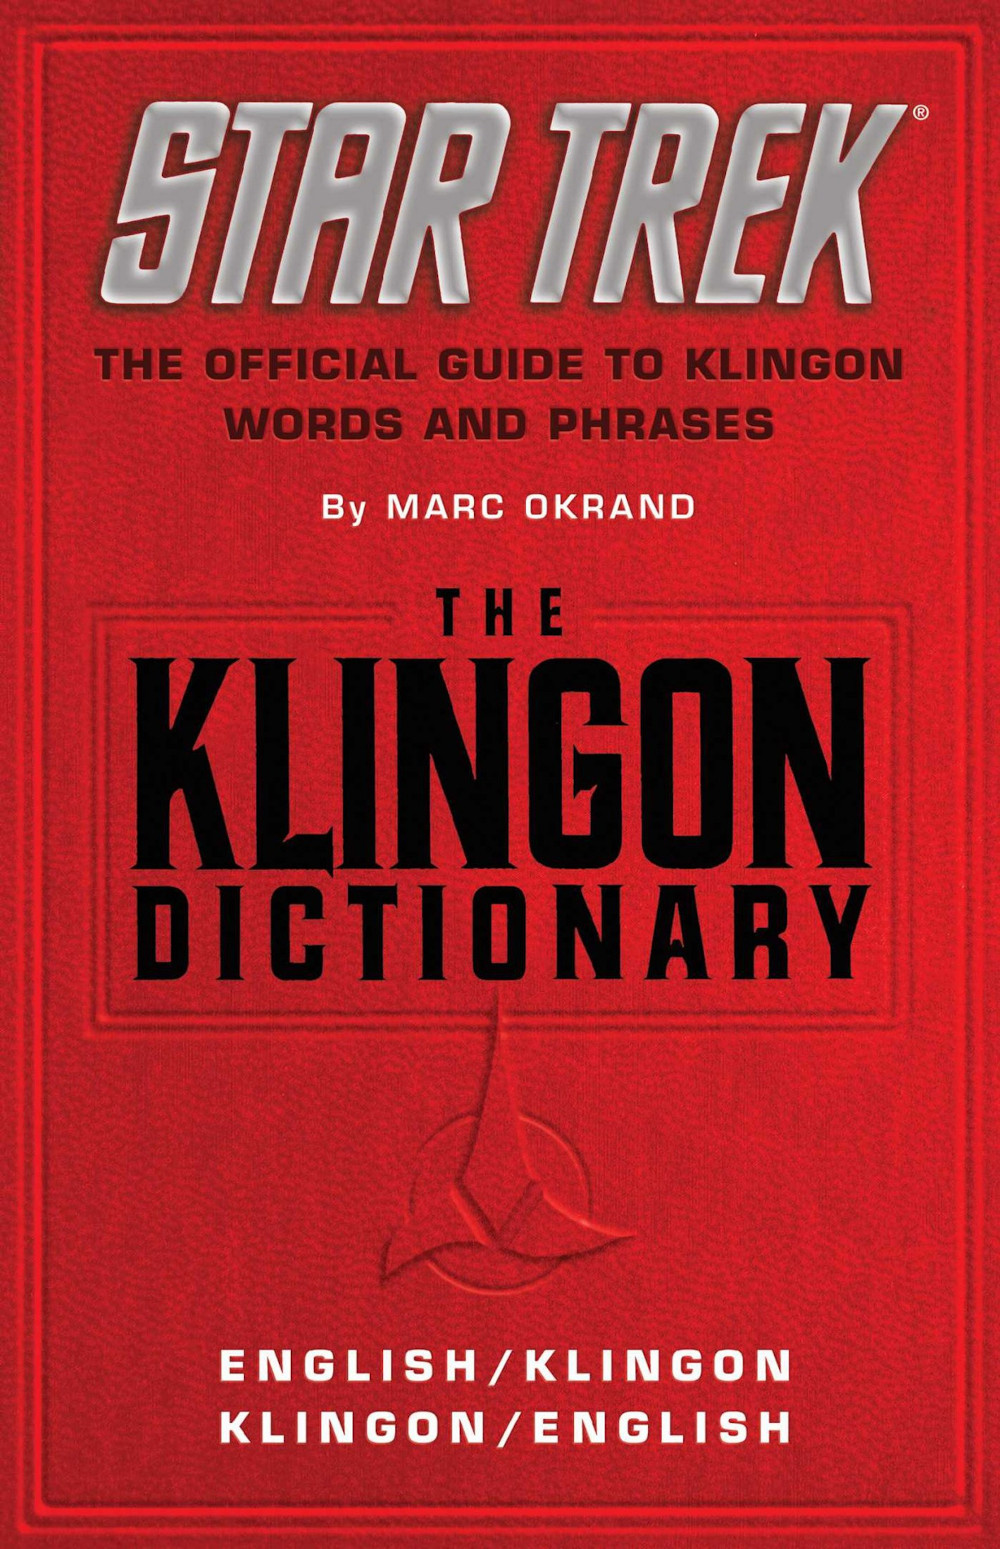 The Klingon Dictionary (Dec 1985)